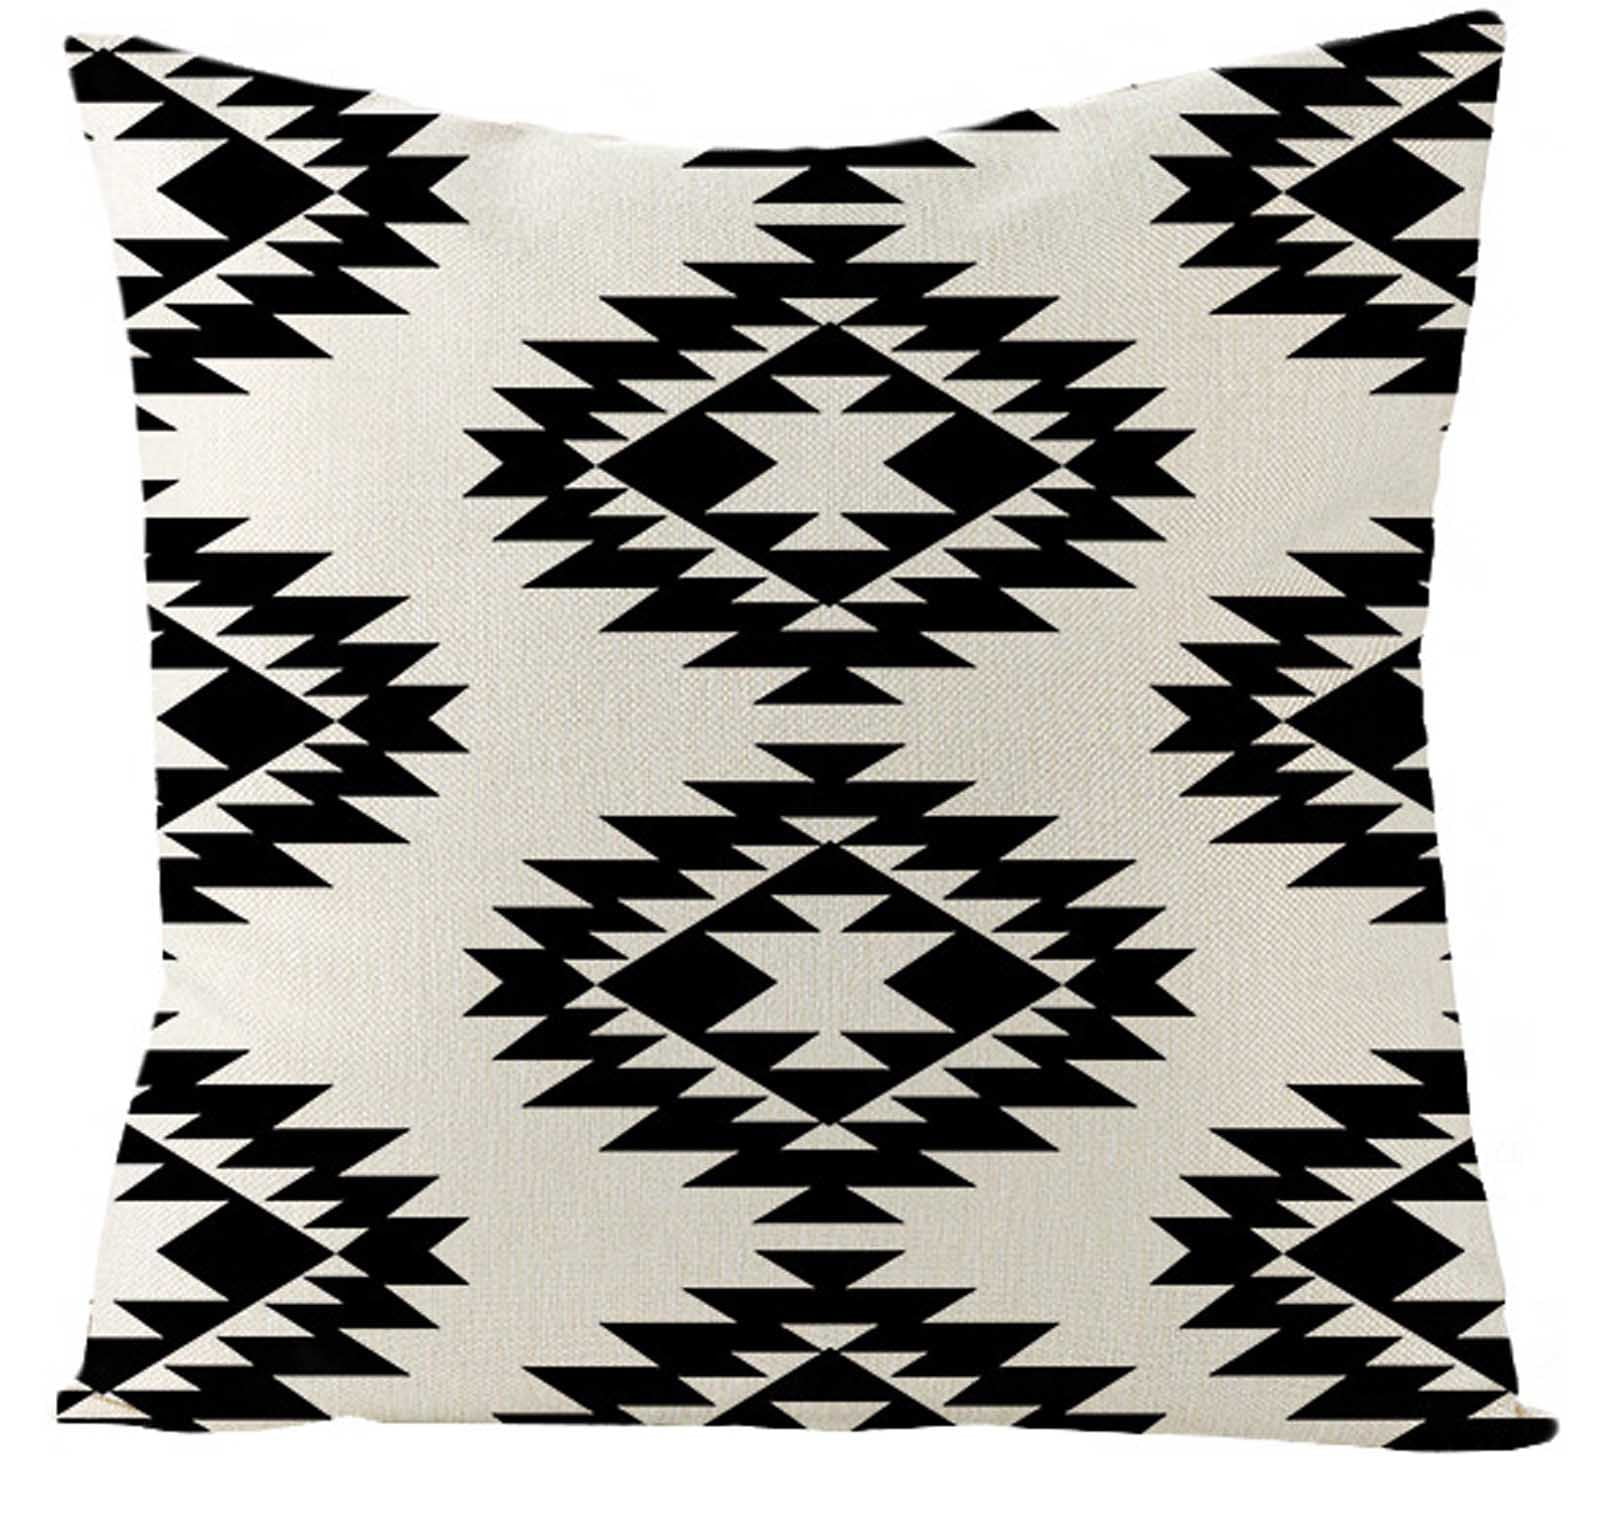 Black & White Geometric Throw Pillow Case Cushion Cover Sofa Home Decor 18x18 in 